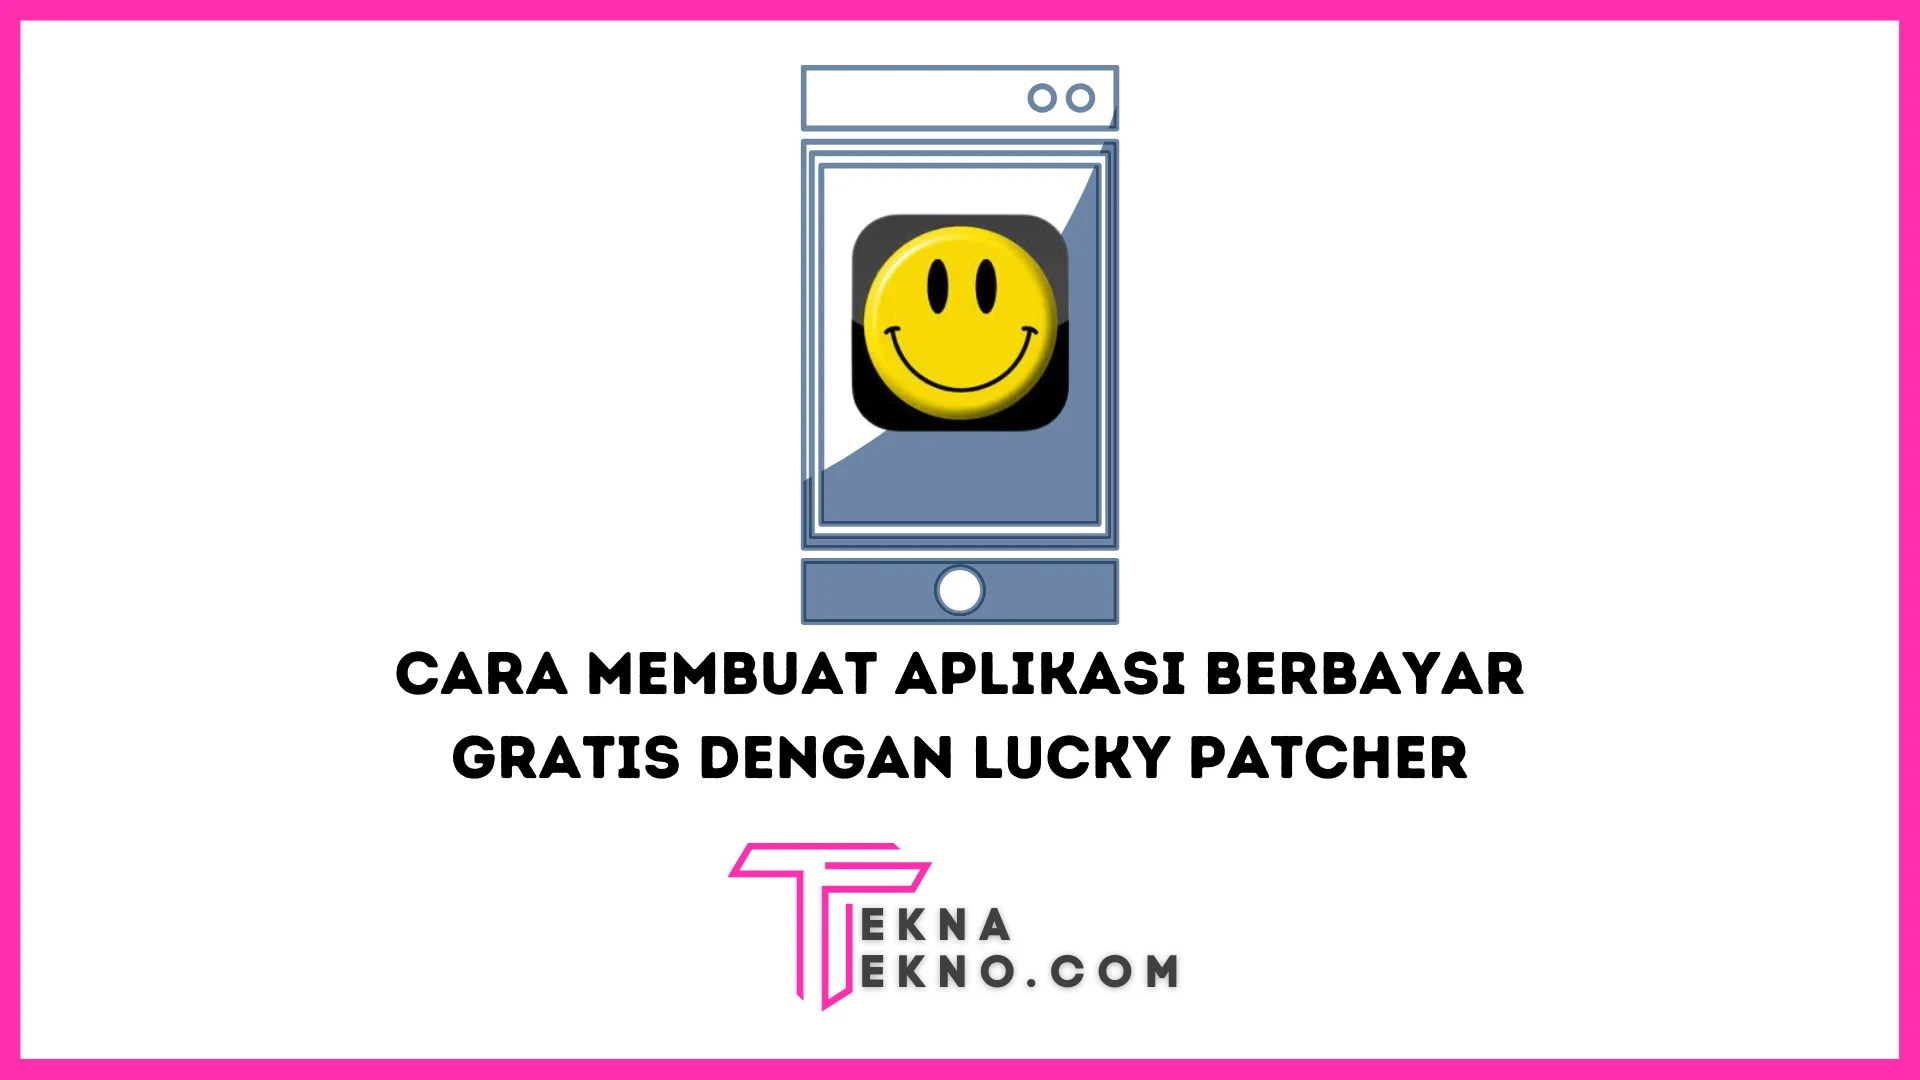 10 Cara Membuat Aplikasi Berbayar Menjadi Gratis dengan Lucky Patcher